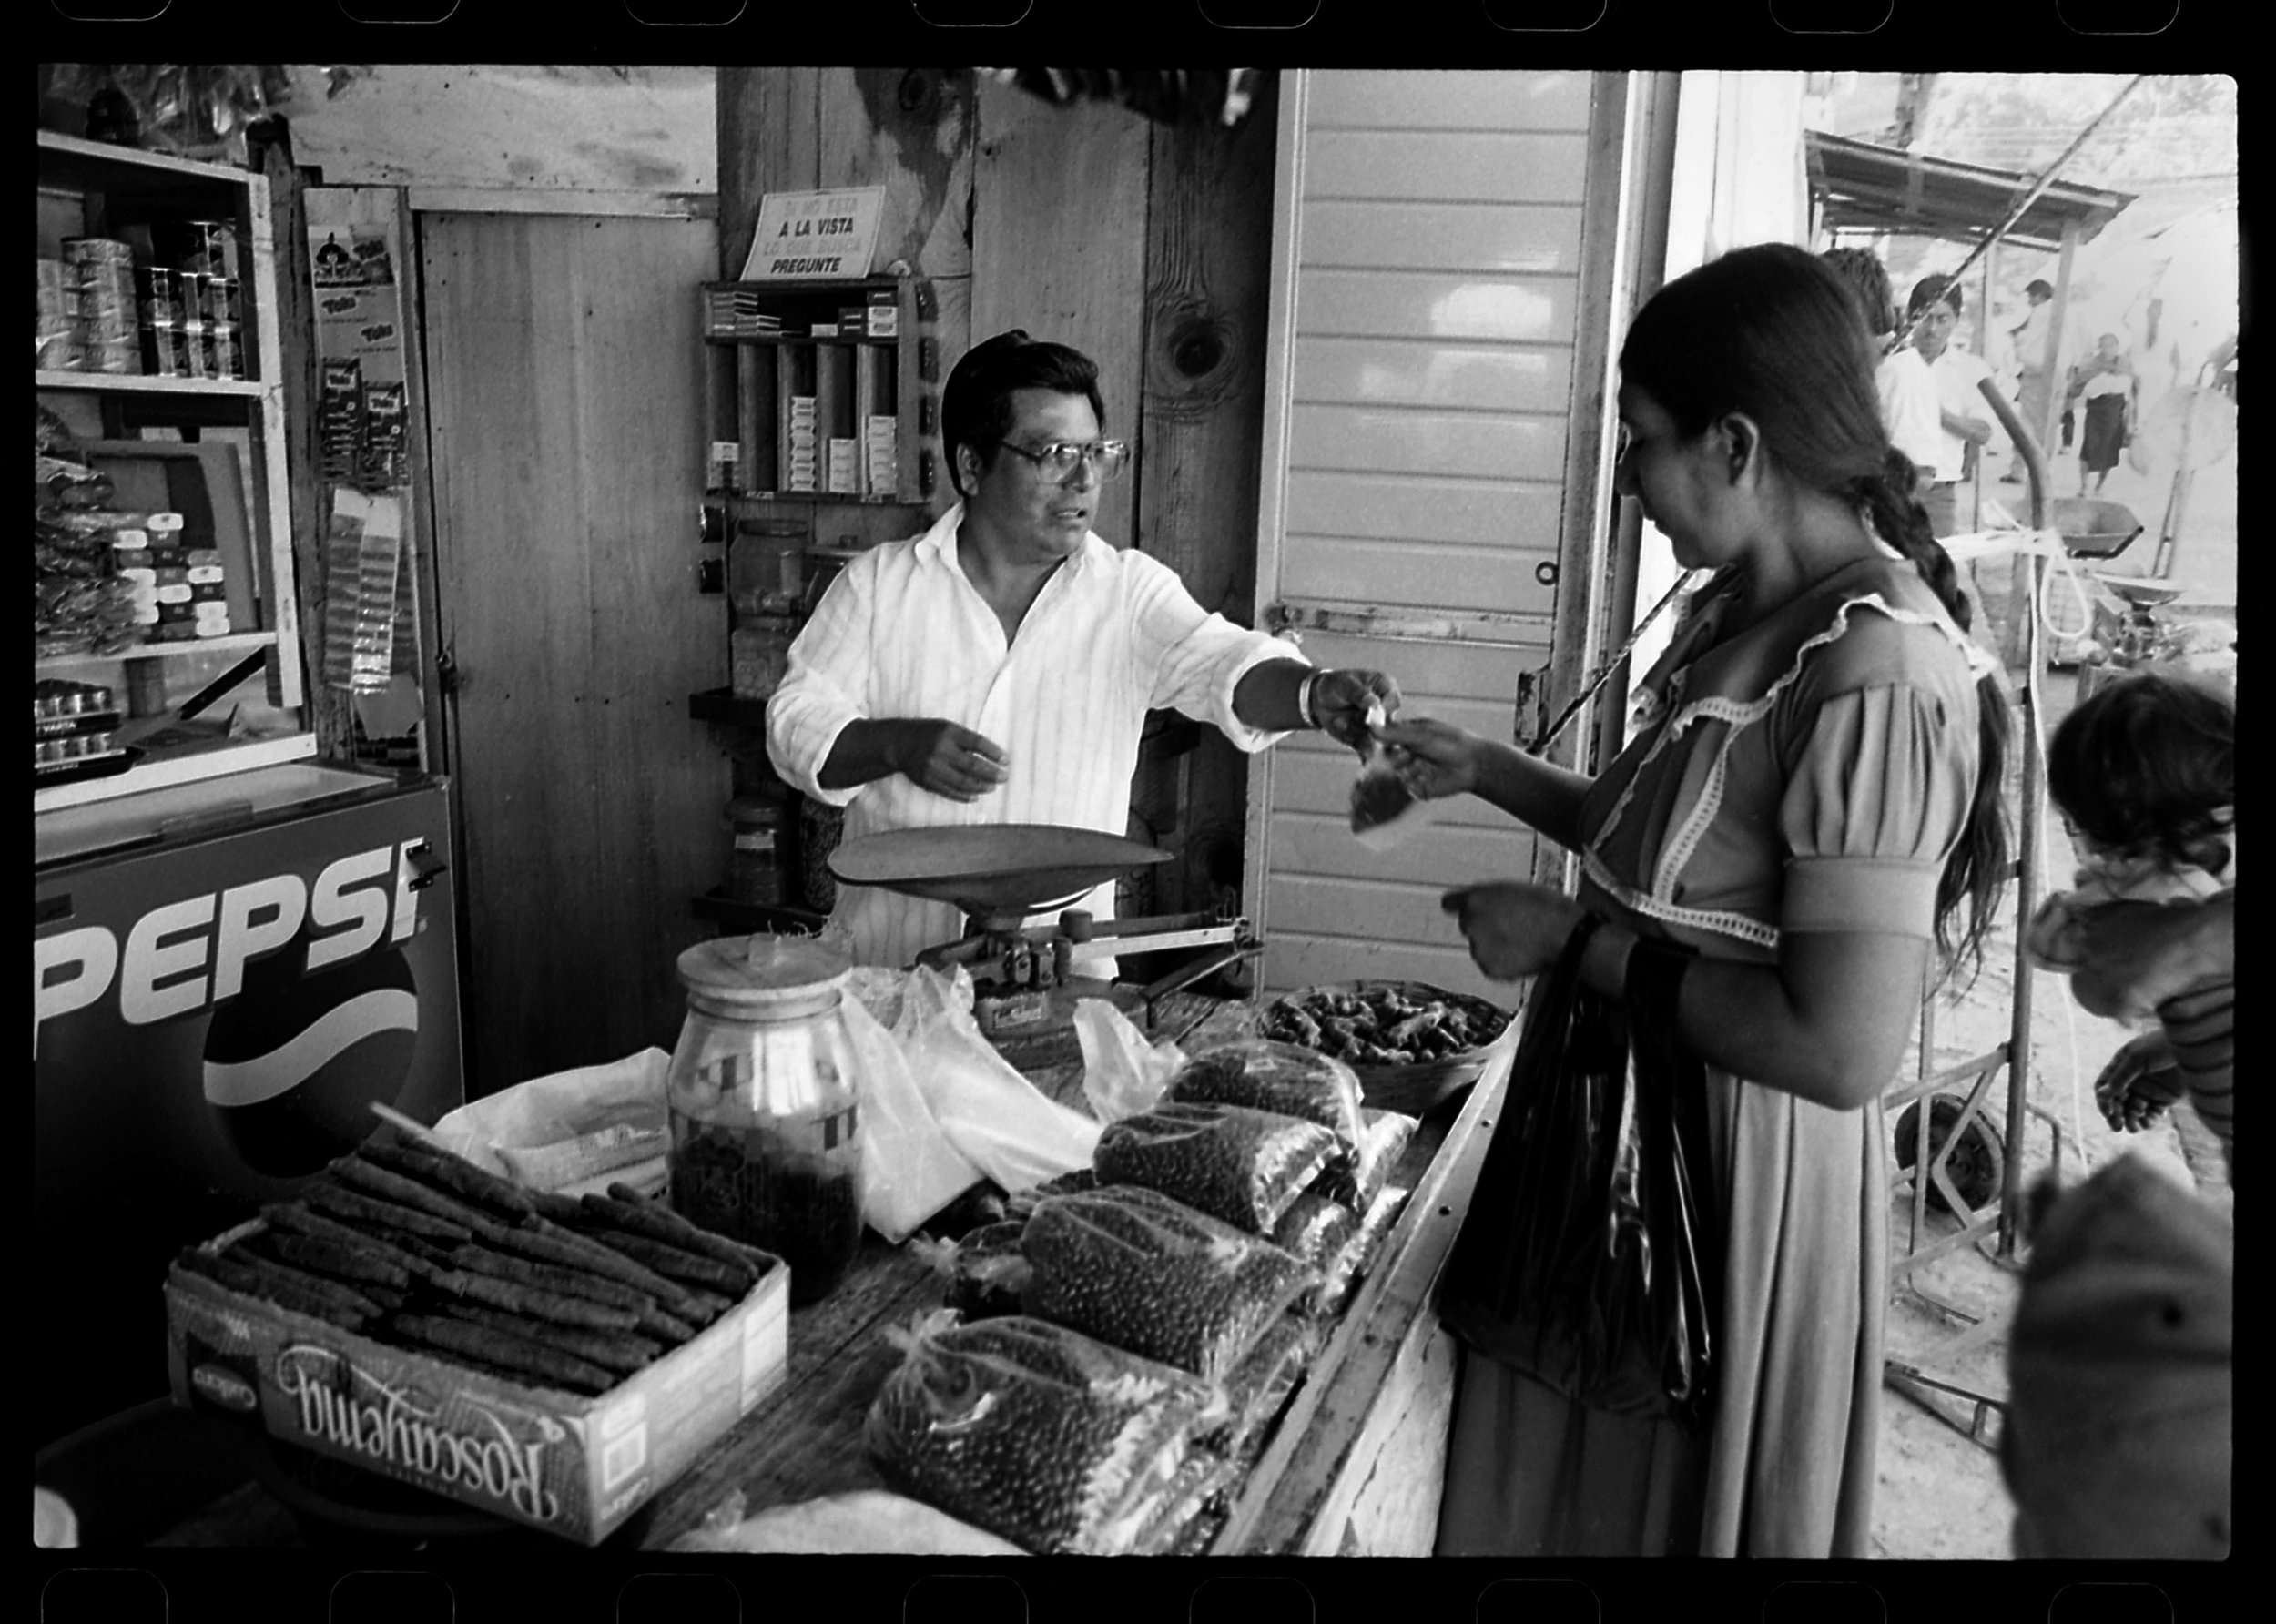  Selling cigars at the market in Simojovel, Chiapas, Mexico. 